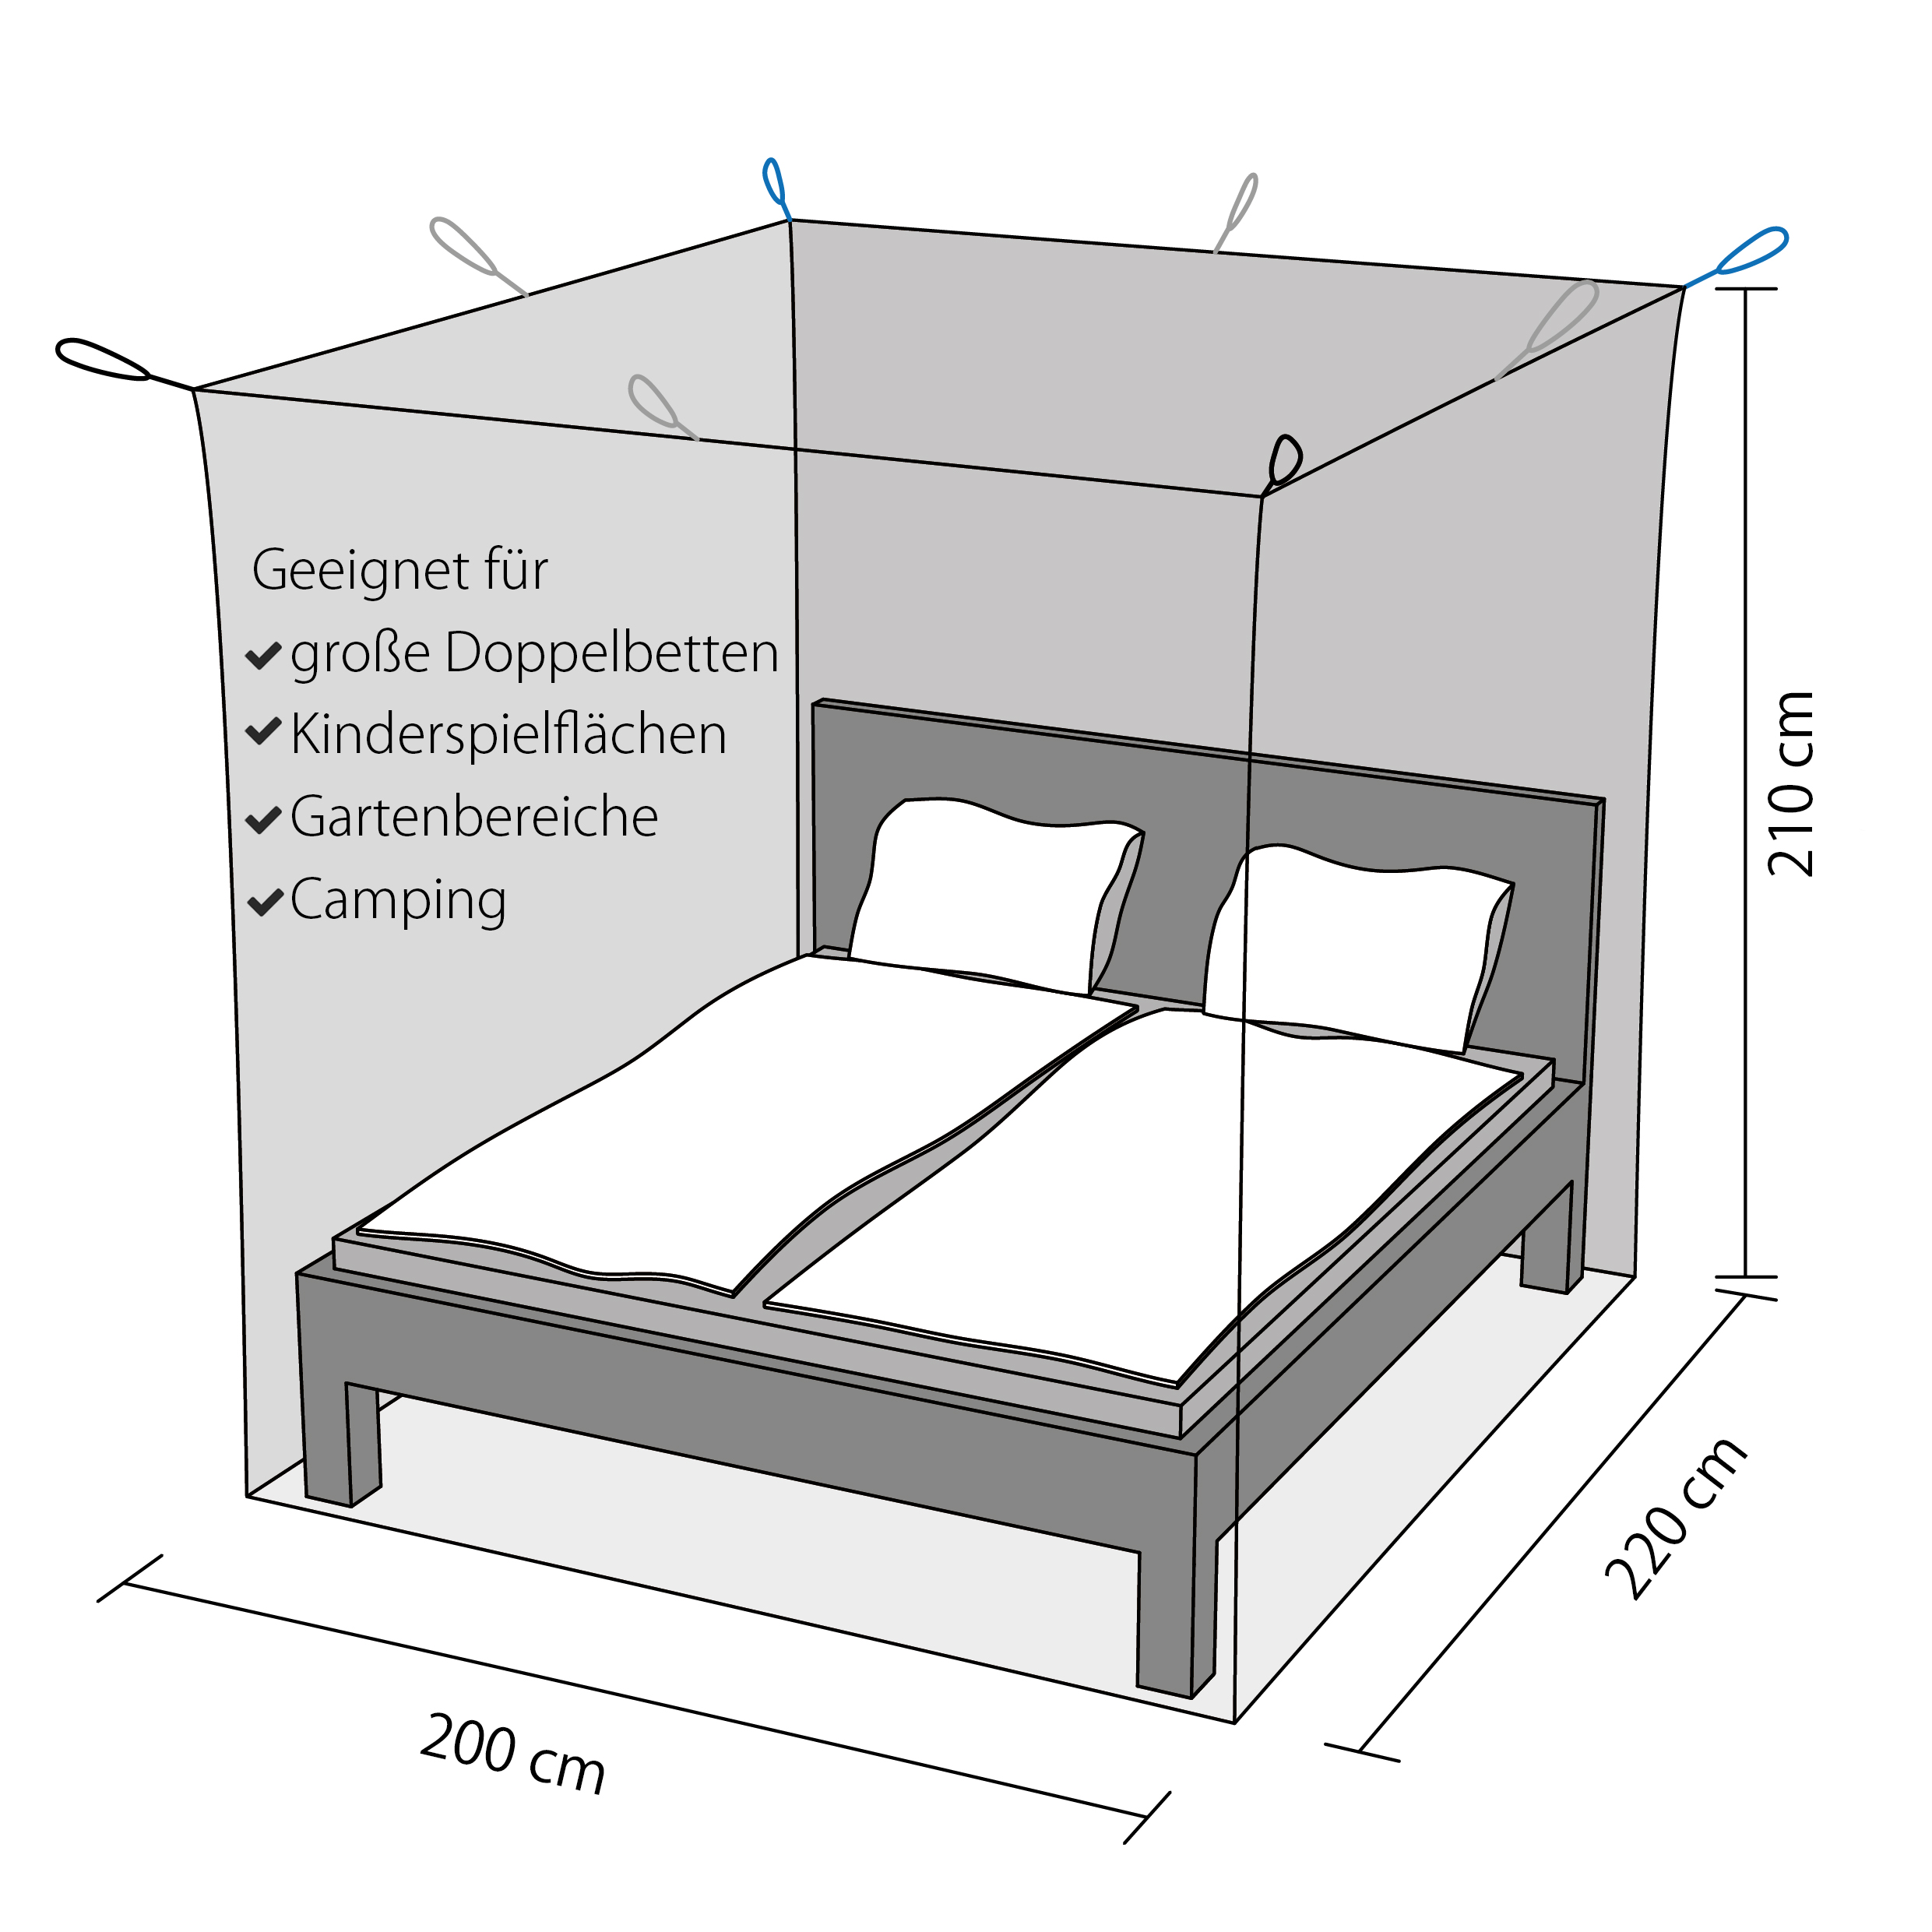 Reise-Moskitonetz für Doppelbetten (2 x 2 x 2 m), 280 Mesh - Ihr